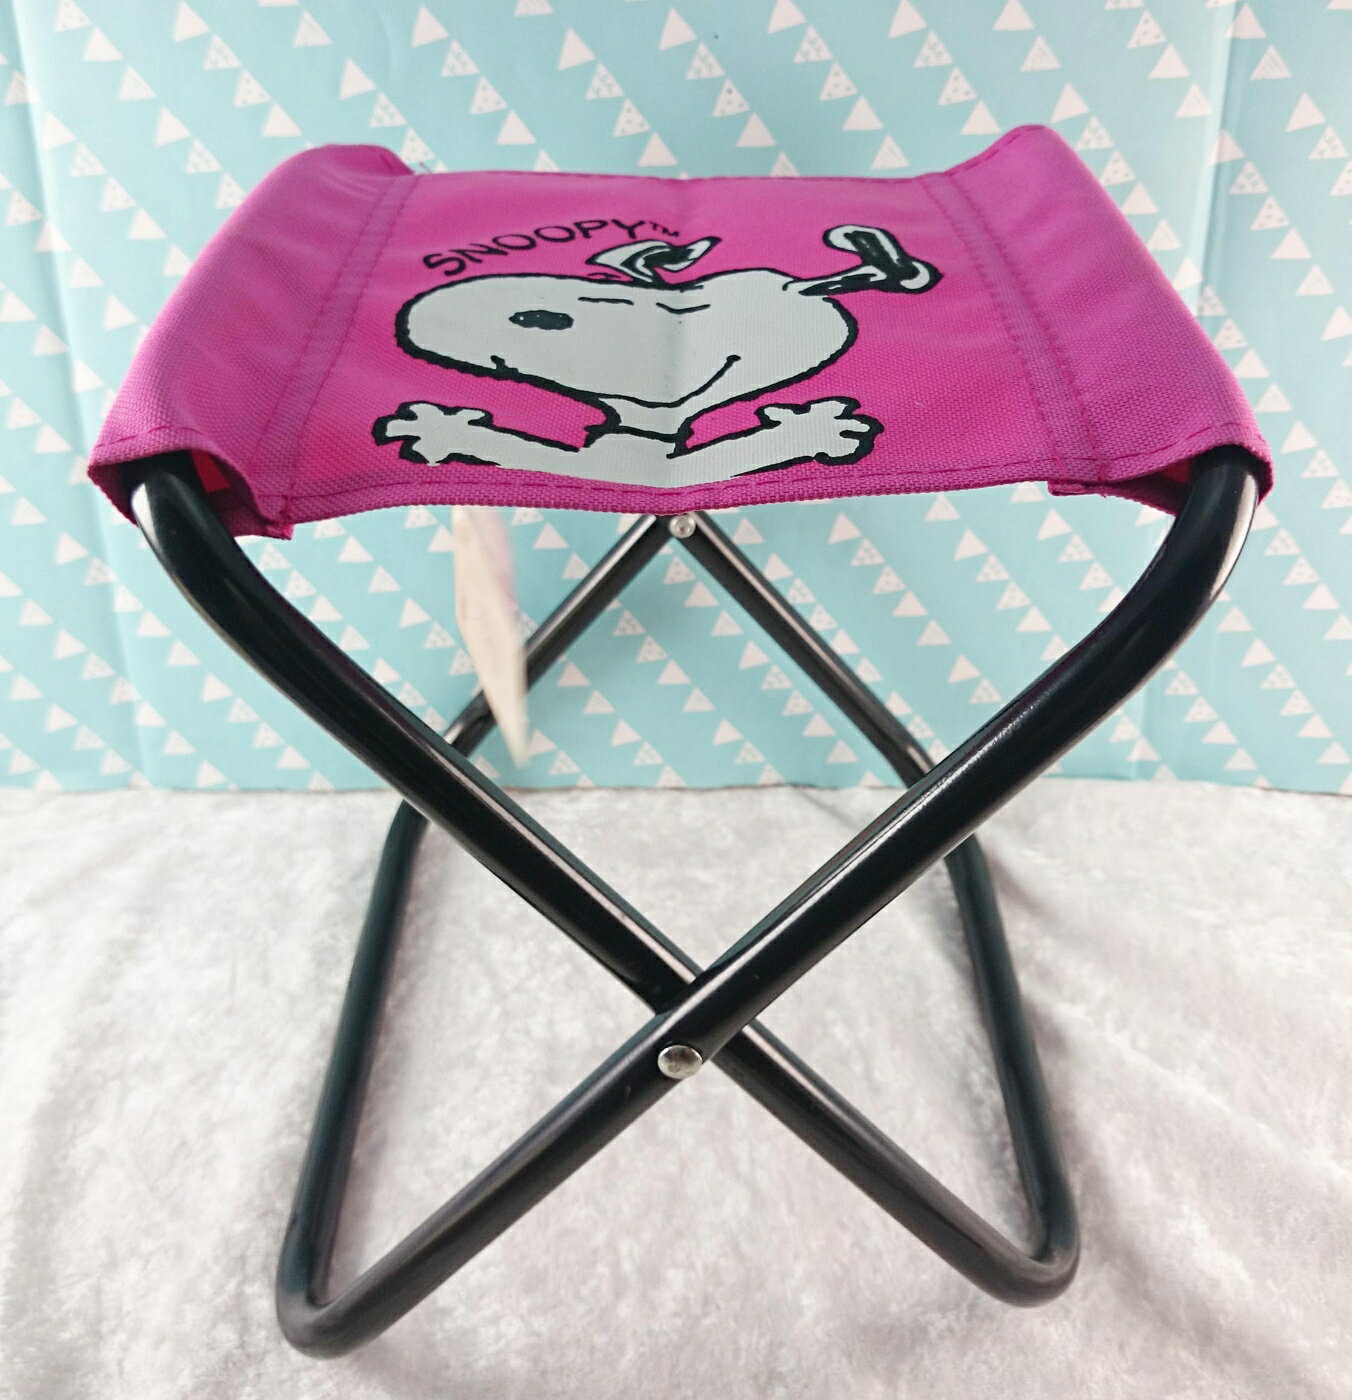 【震撼精品百貨】史奴比Peanuts Snoopy 折疊椅 粉紅色 震撼日式精品百貨